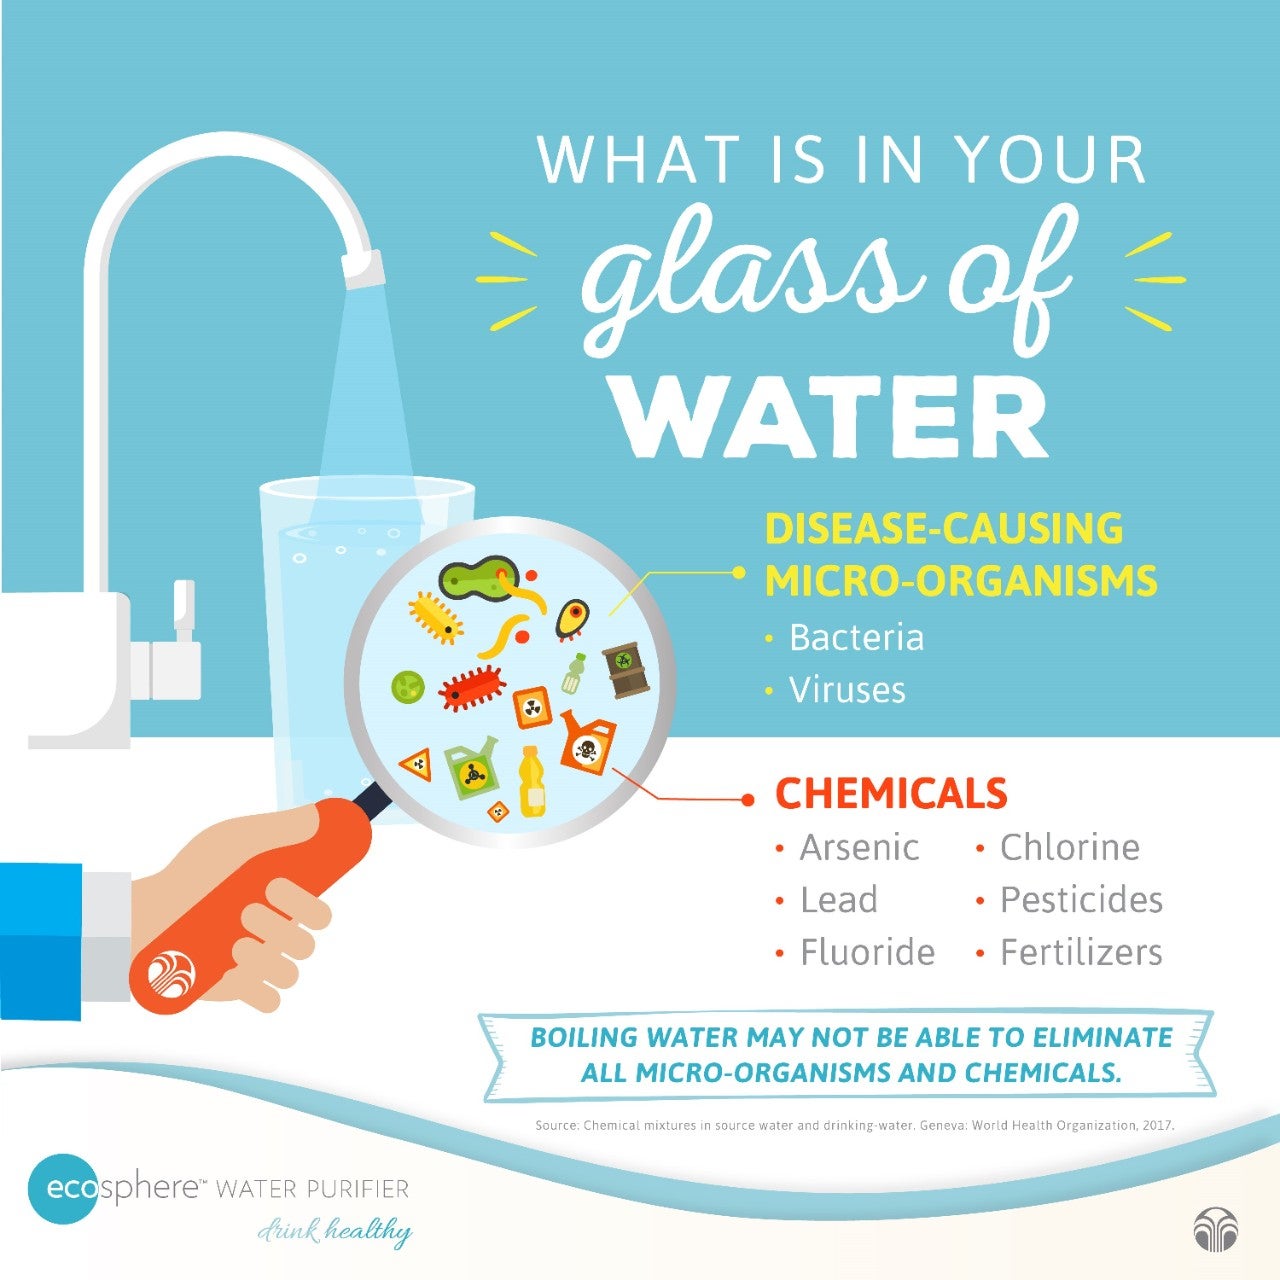 Chất lượng nguồn nước uống rất quan trọng vì những chất tạp nhiễm đang hiện diện trong nguồn nước máy cấp nhà bạn và có thể gây ra những đe dọa về sức khỏe! 